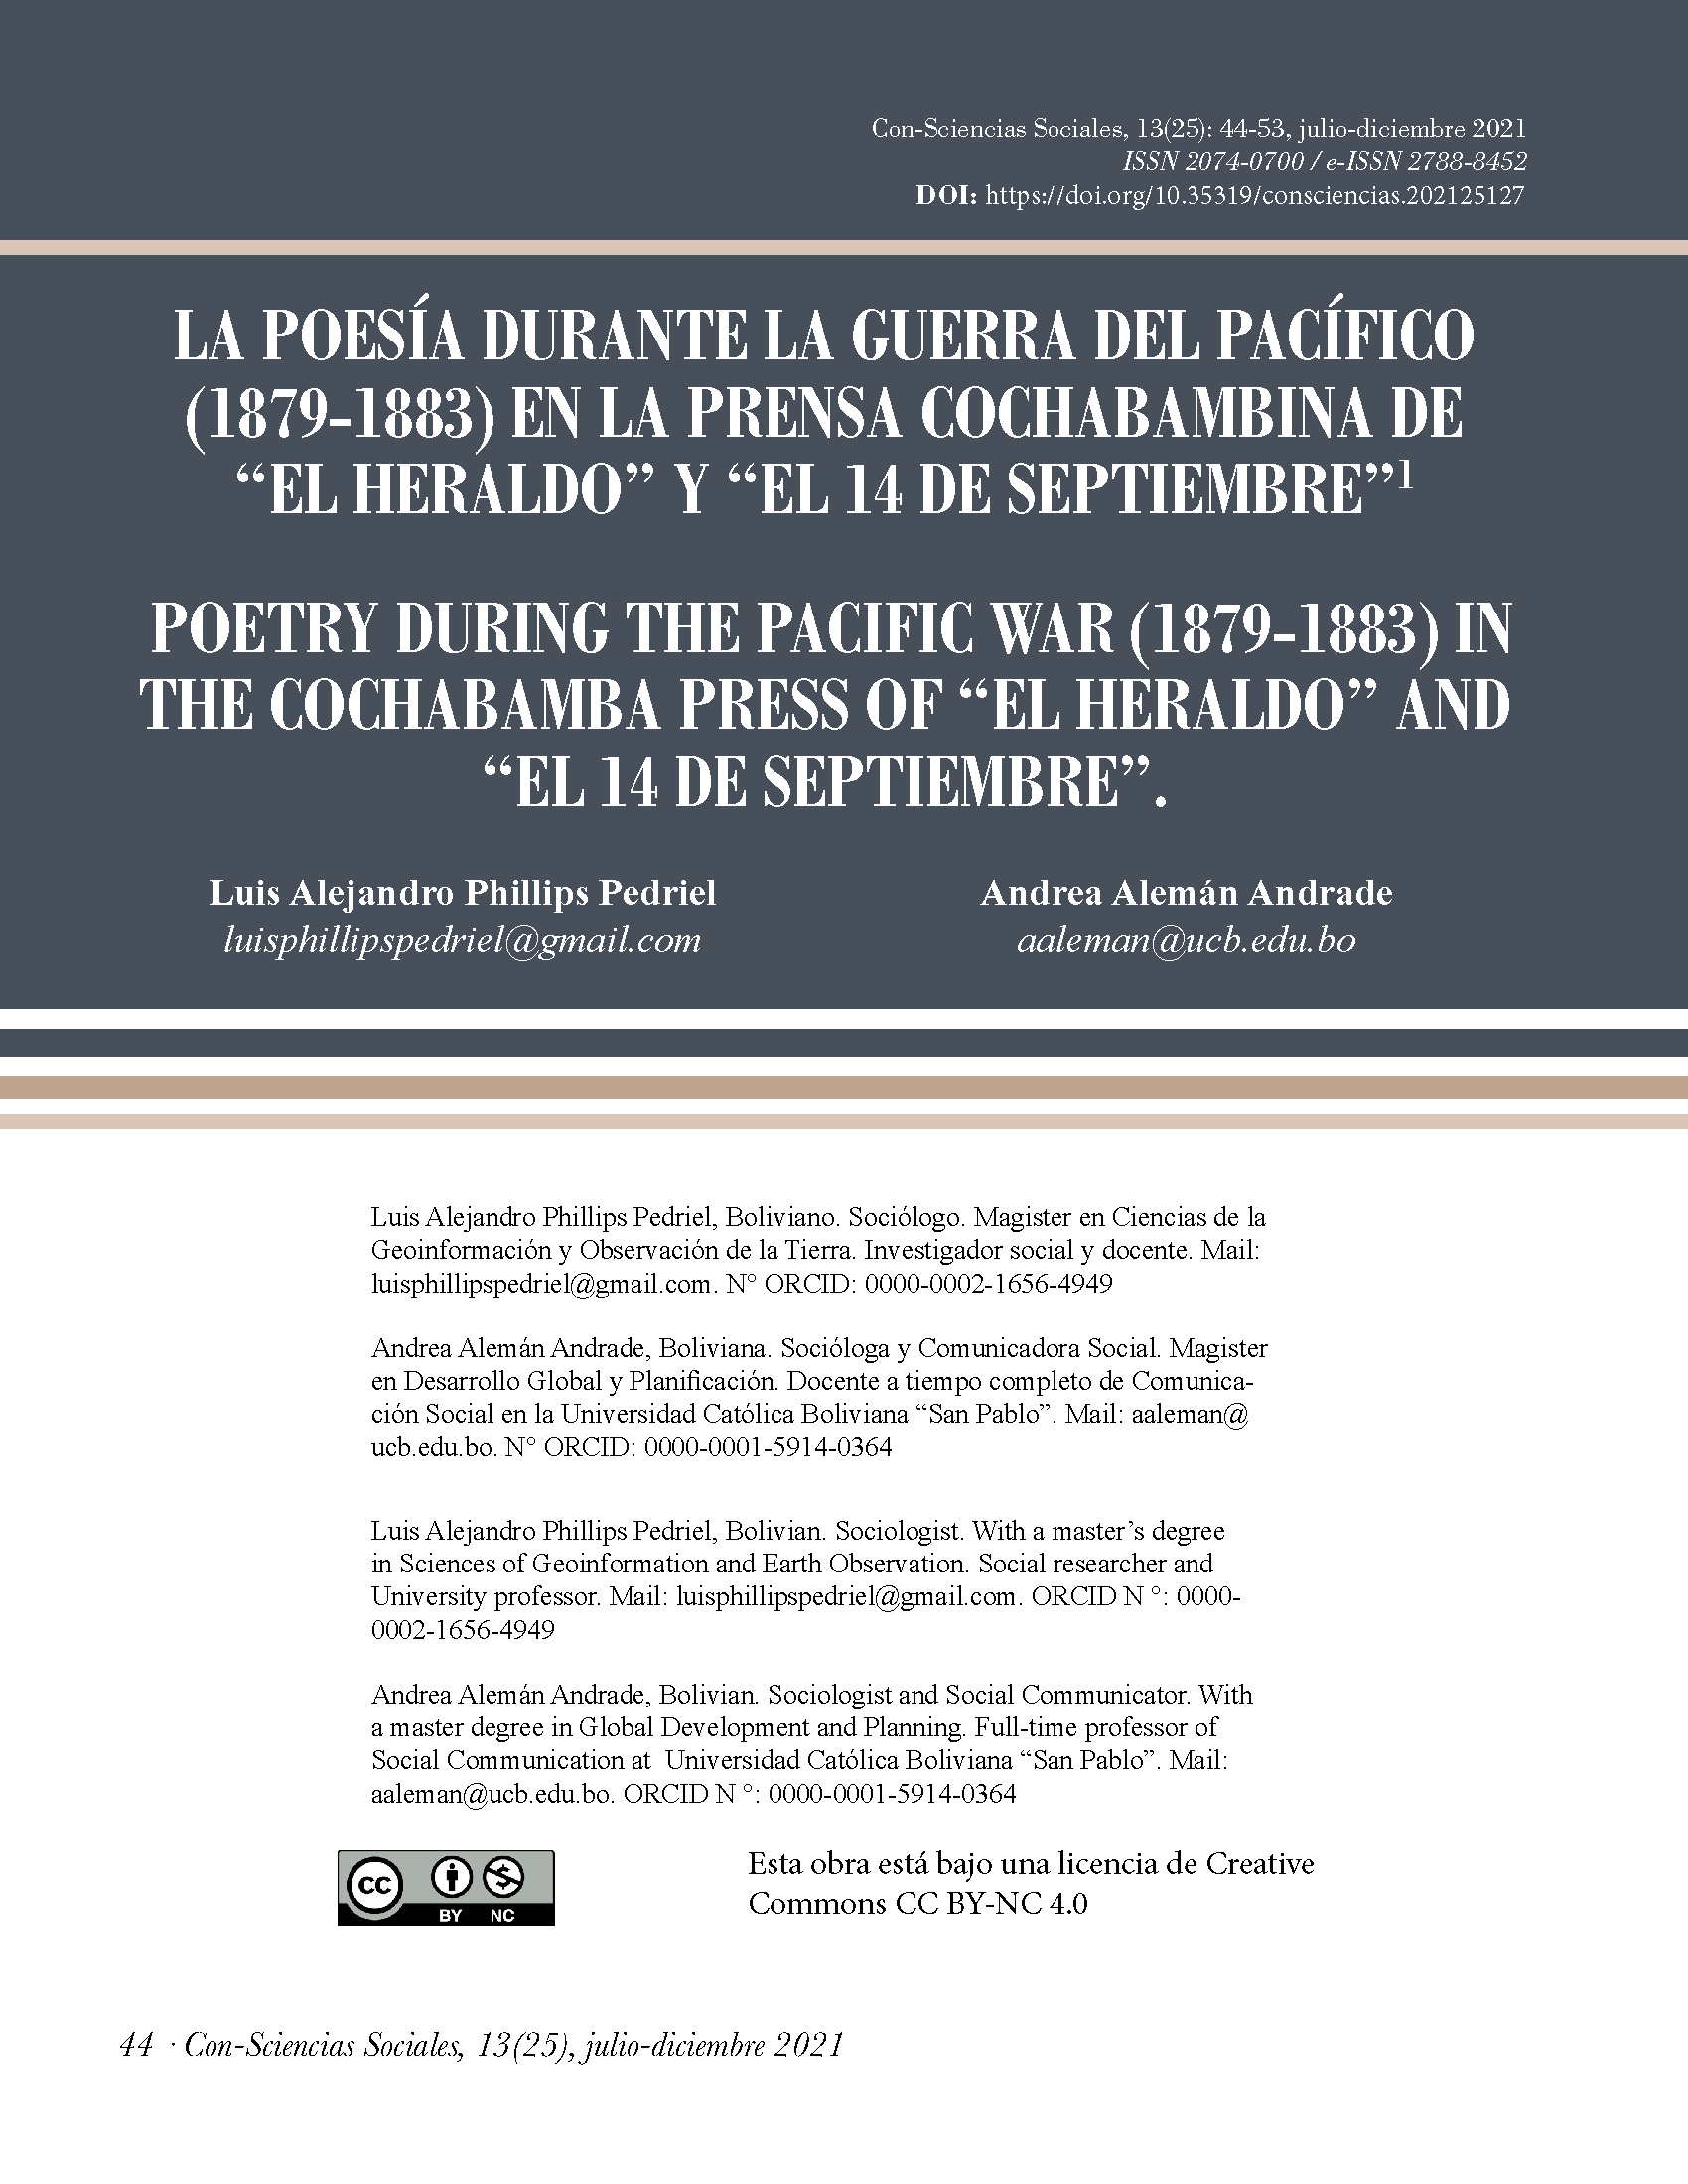 La poesía durante la Guerra del Pacífico (1879-1883) en la prensa cochabambina de “El Heraldo” y “El 14 de Septiembre”